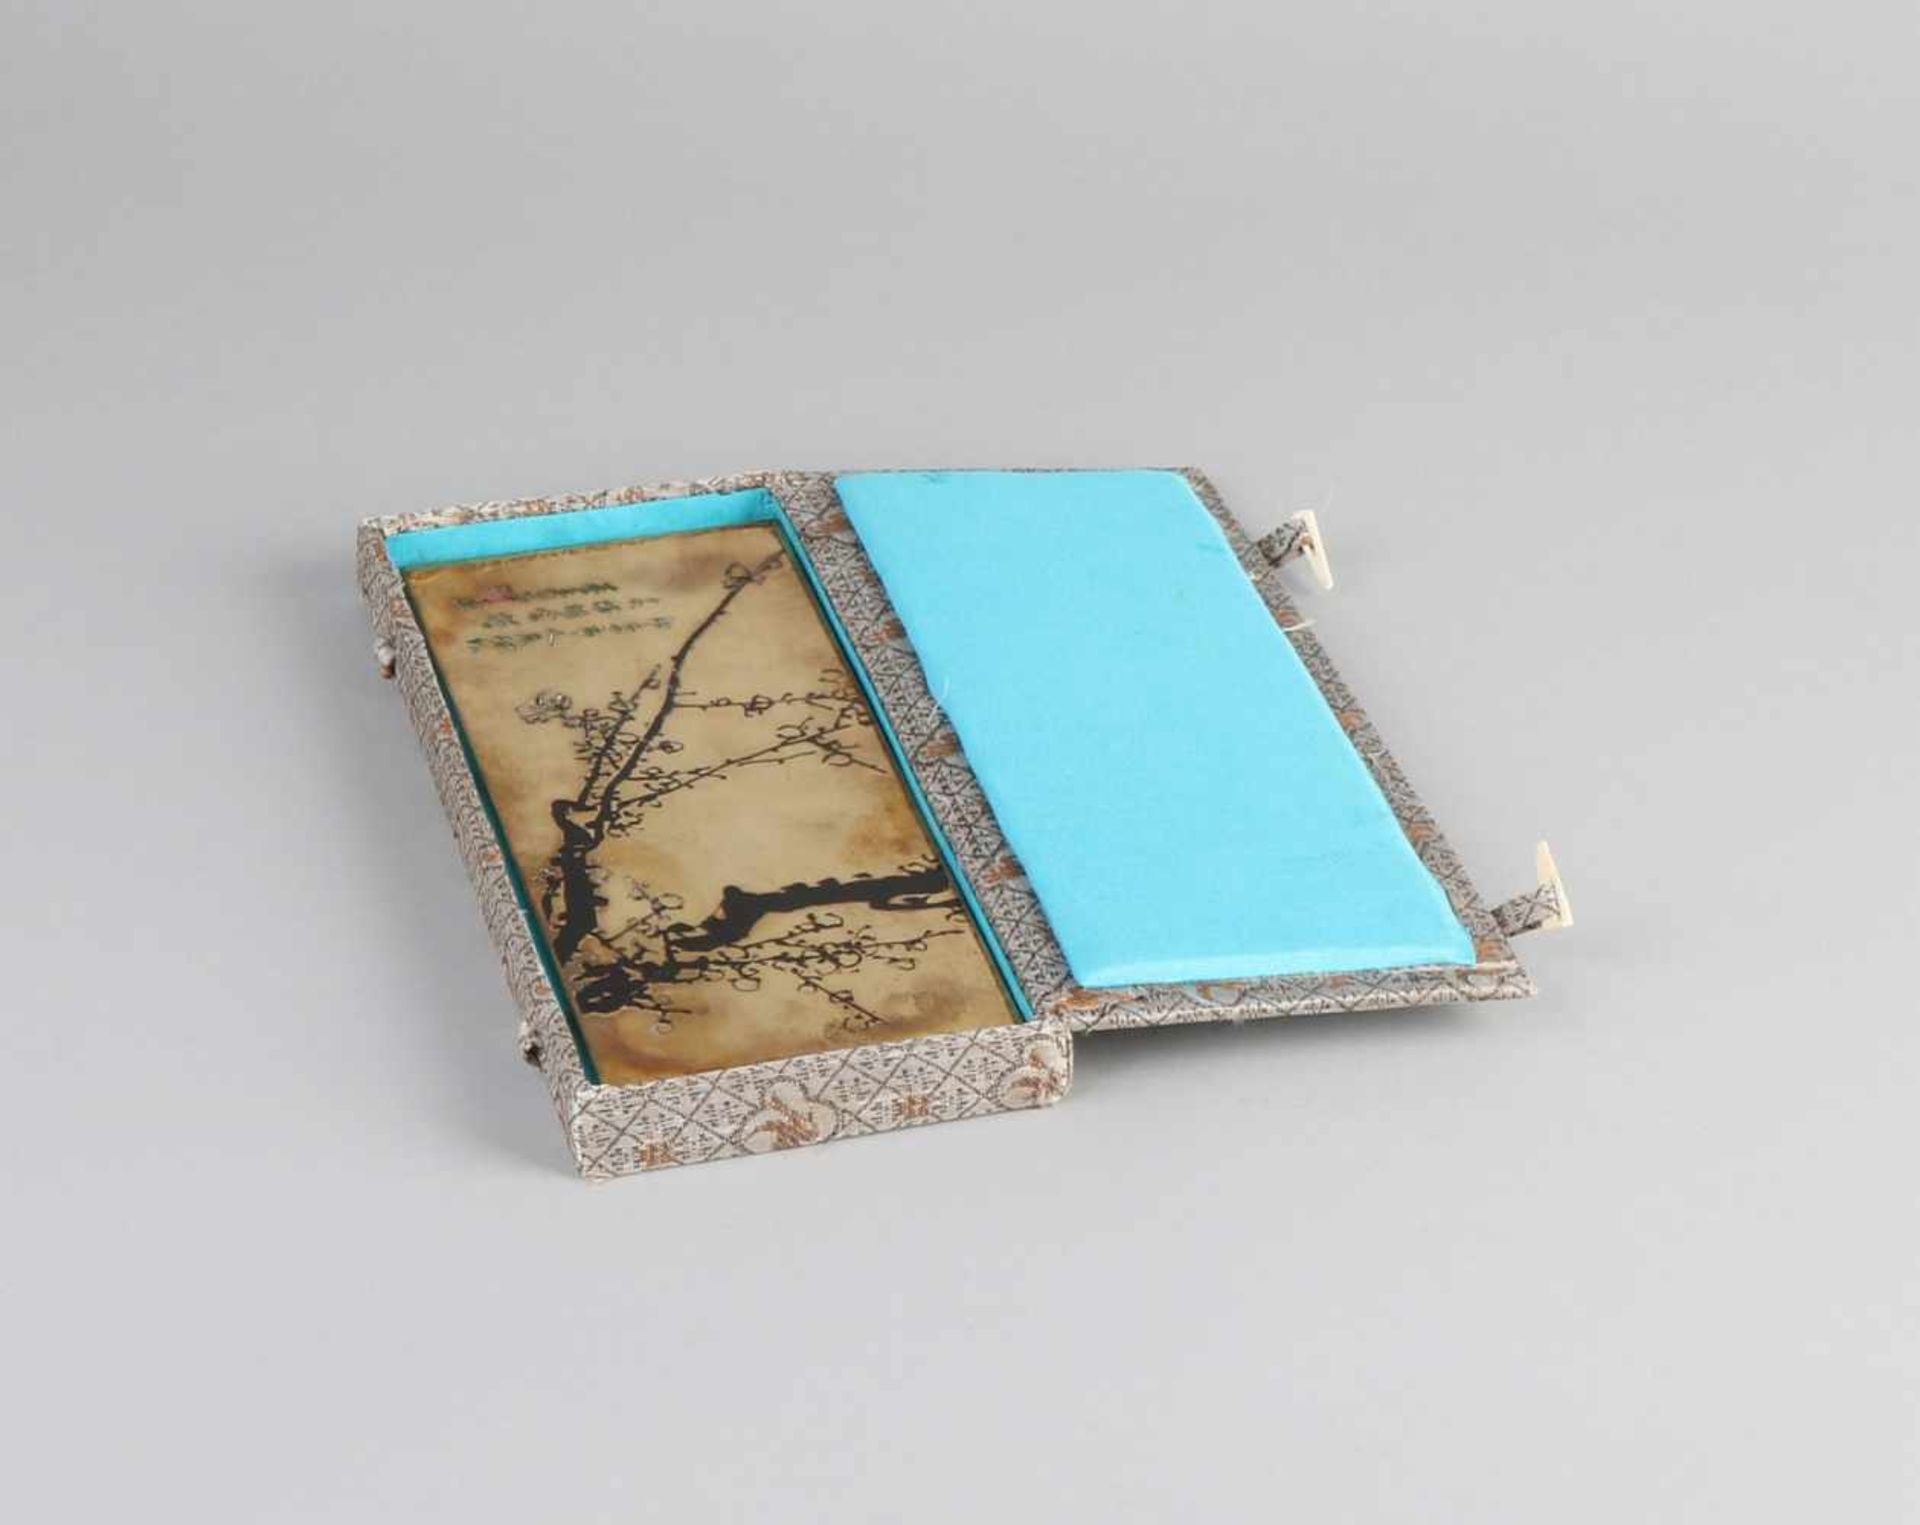 Chinesische / japanische Bronzetafel mit Text + Unterschrift. Prunus Zweig Dekor. Abmessungen: H